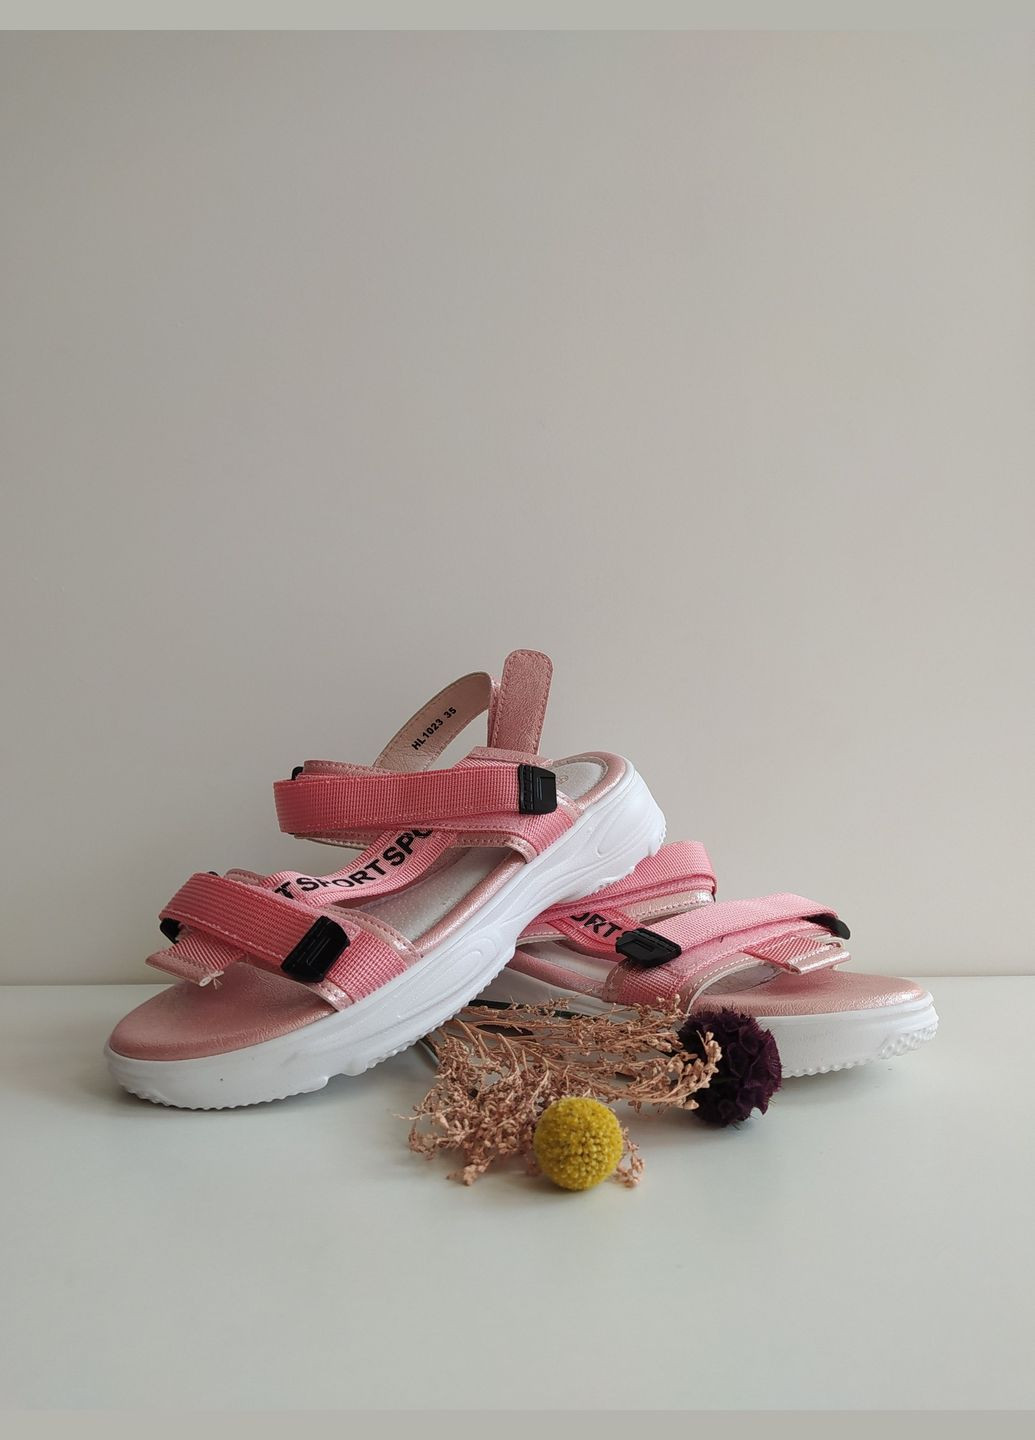 Розовые детские босоножки 35 г 23,2 см розовый артикул б89 Lilin Shoes